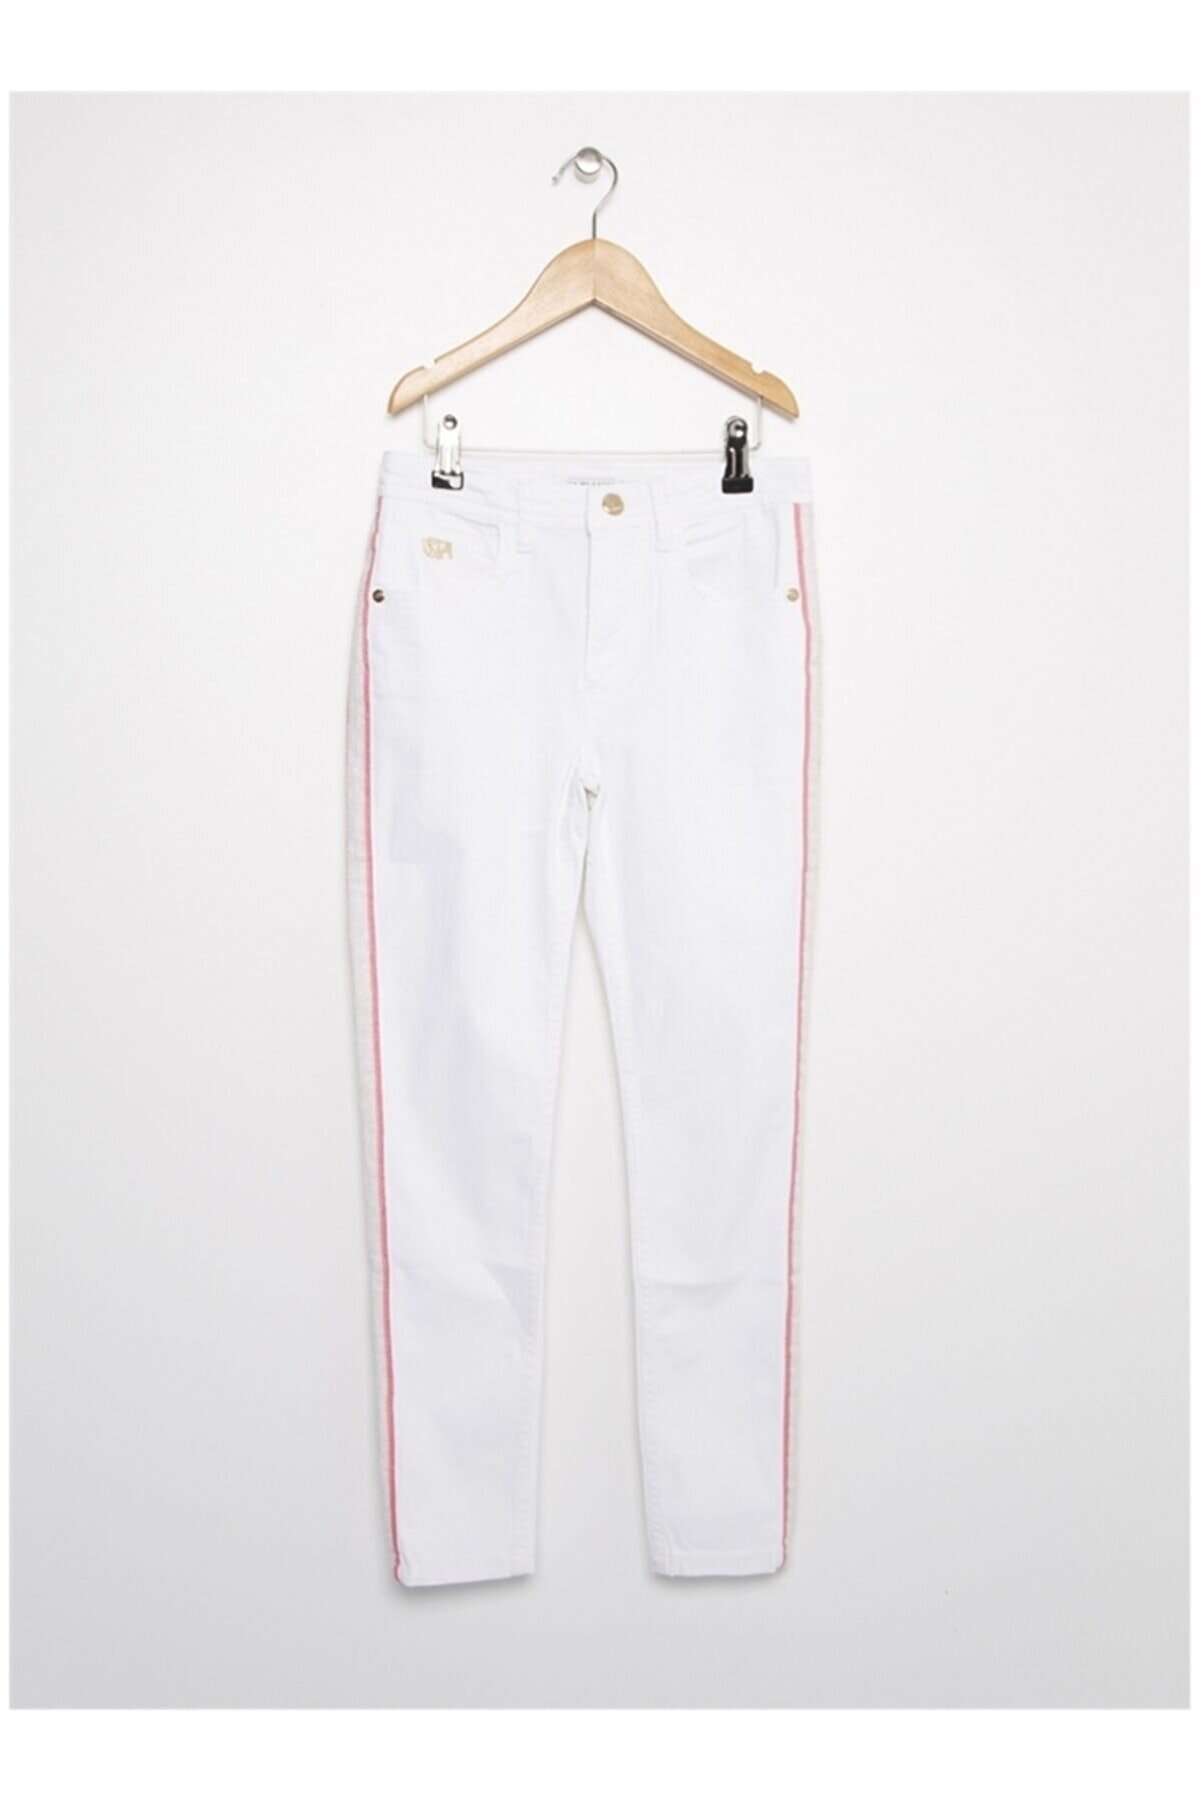 U.S. Polo Assn. Kız Çocuk Beyaz Pantolon